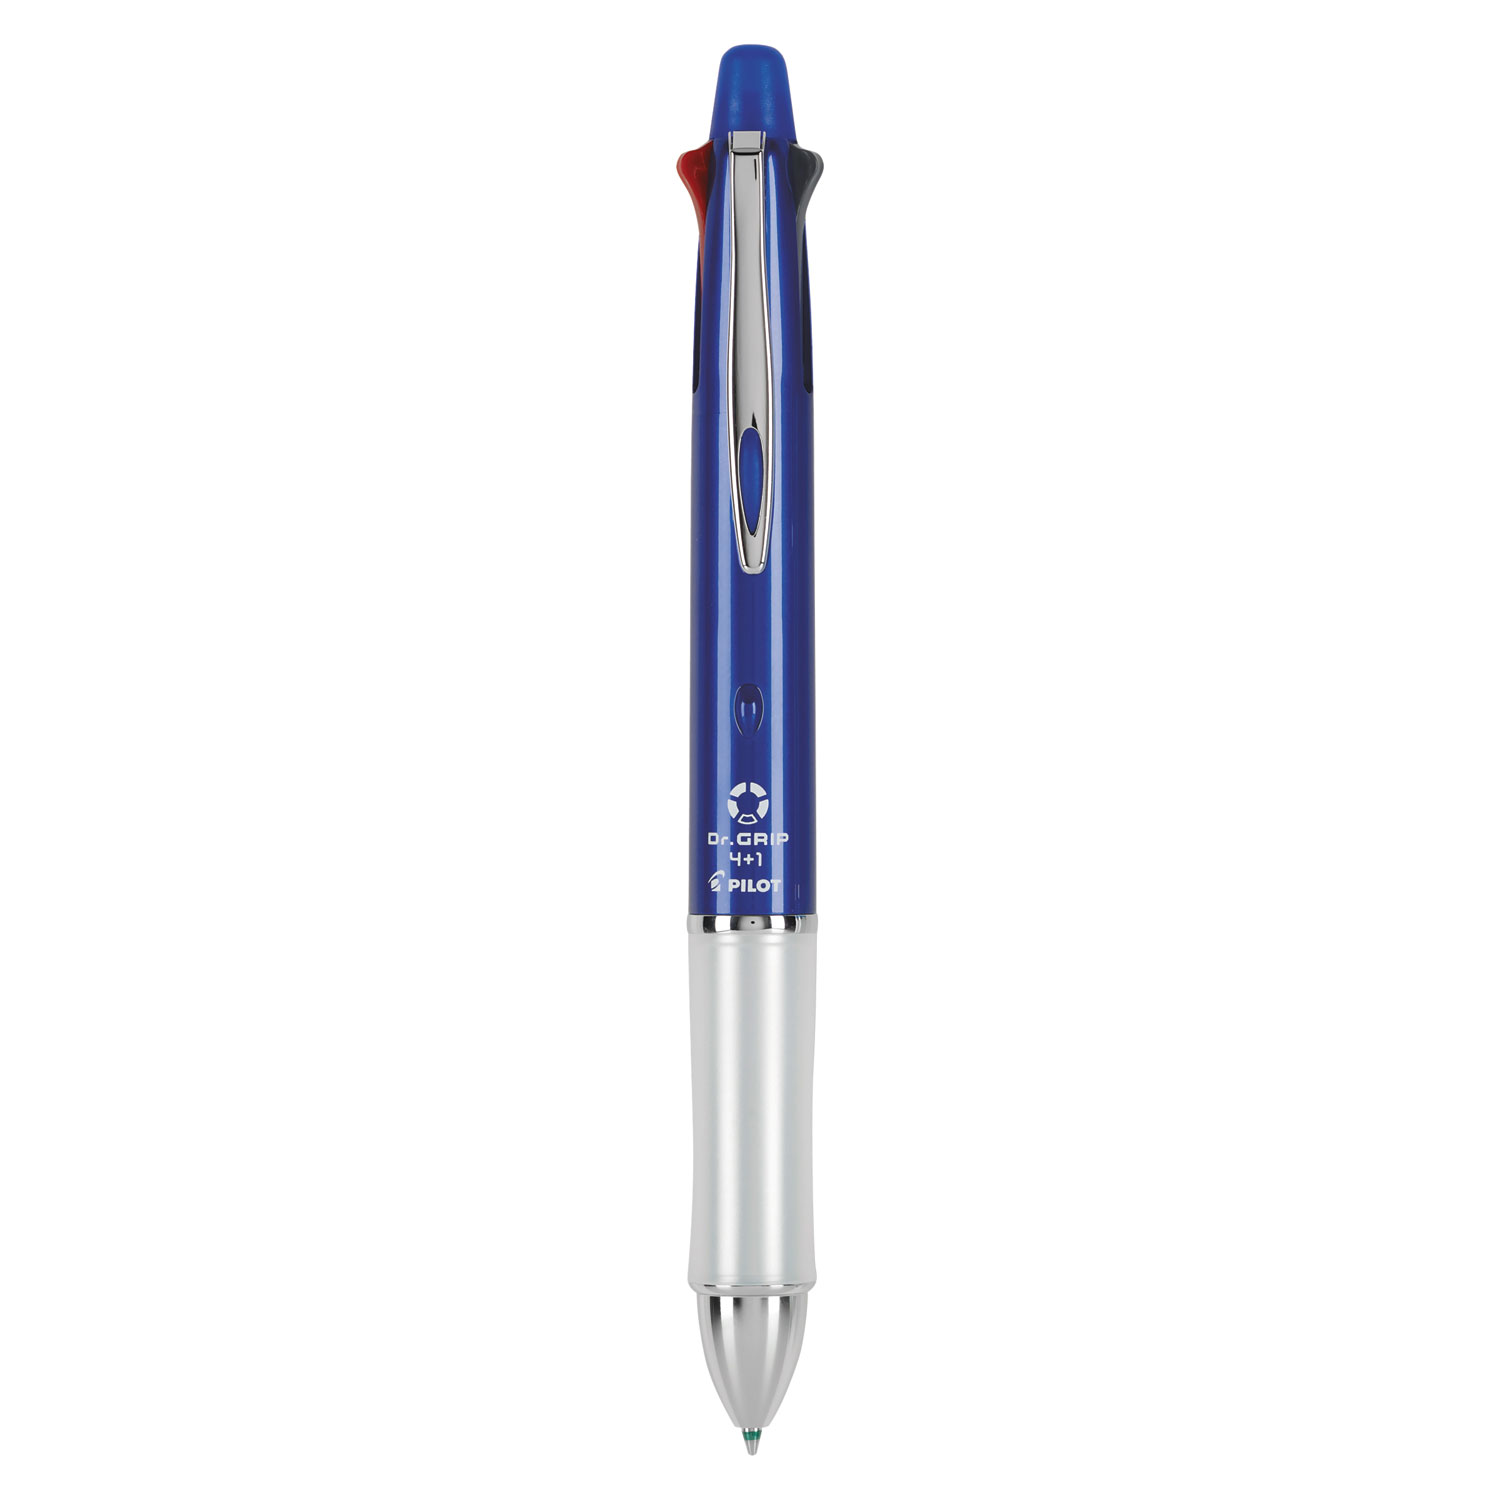  Pilot 36221 Dr. Grip 4 + 1 Retractable Ballpoint Pen/Pencil, BK/BE/GN/Red Ink, Blue Barrel (PIL36221) 